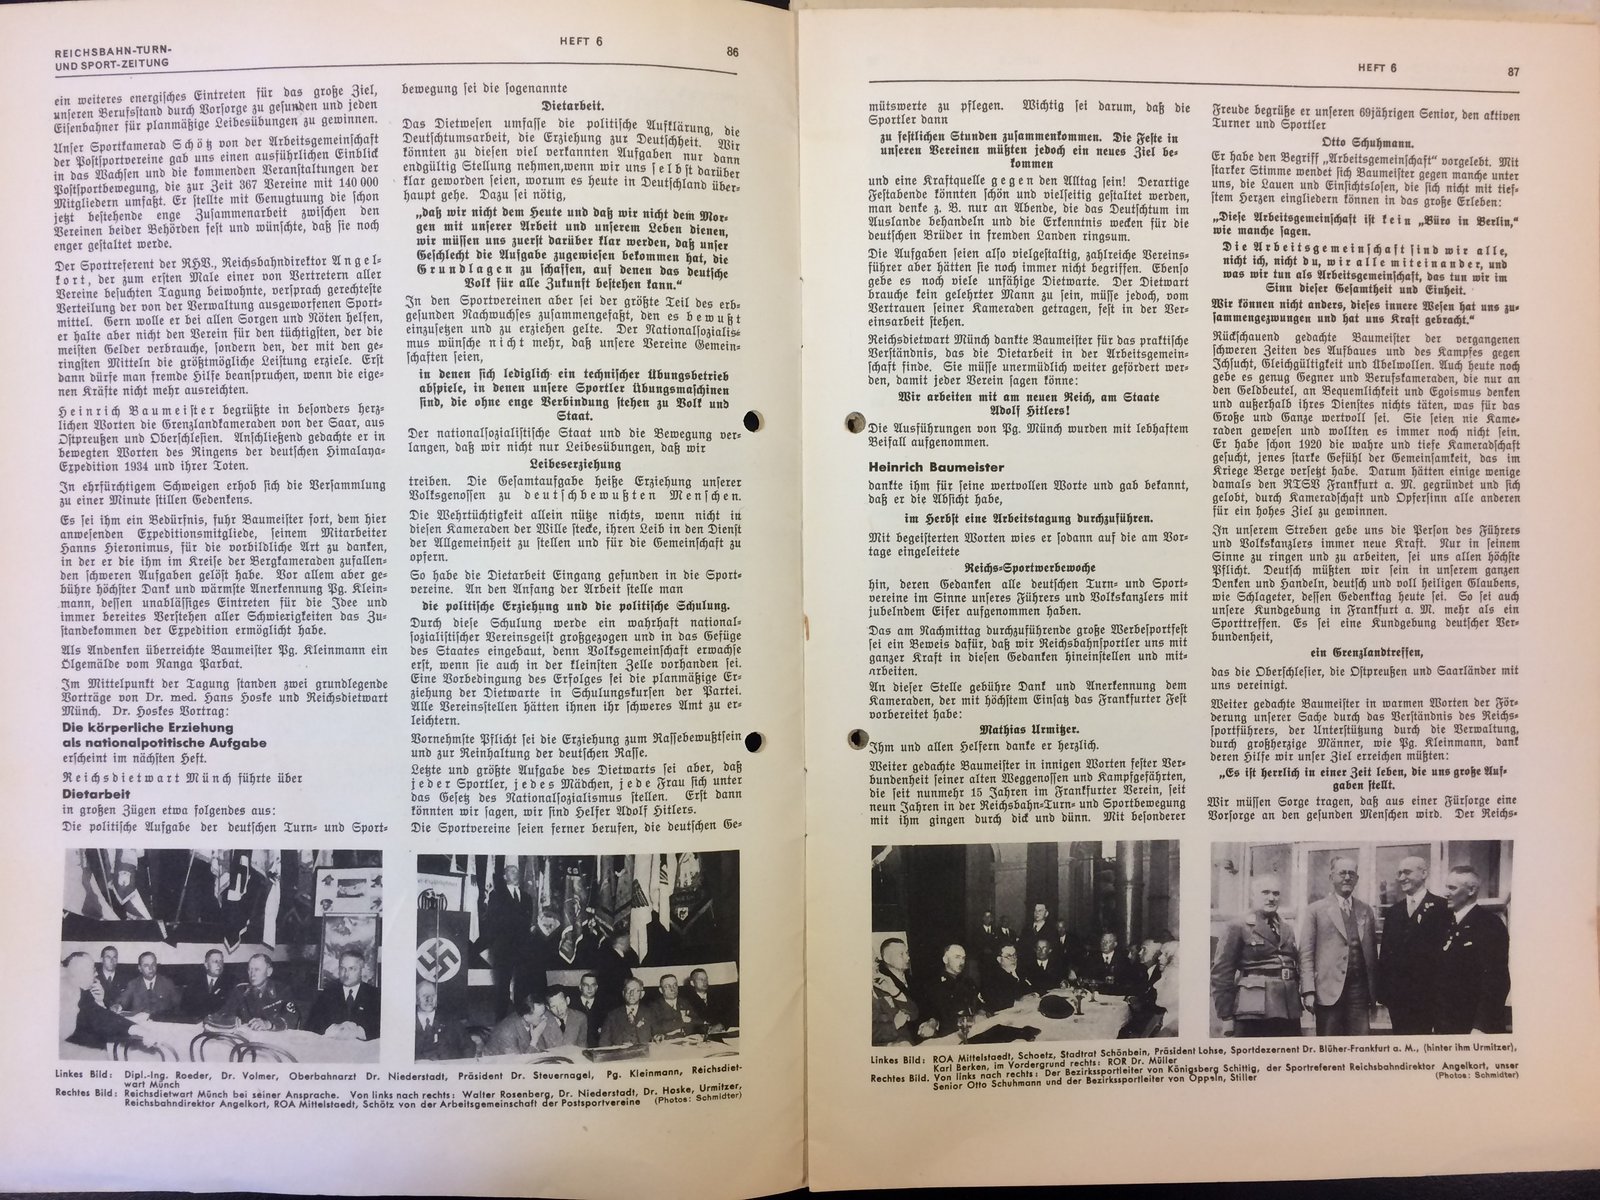 Festschrift Seite 86-87 ca. 1935